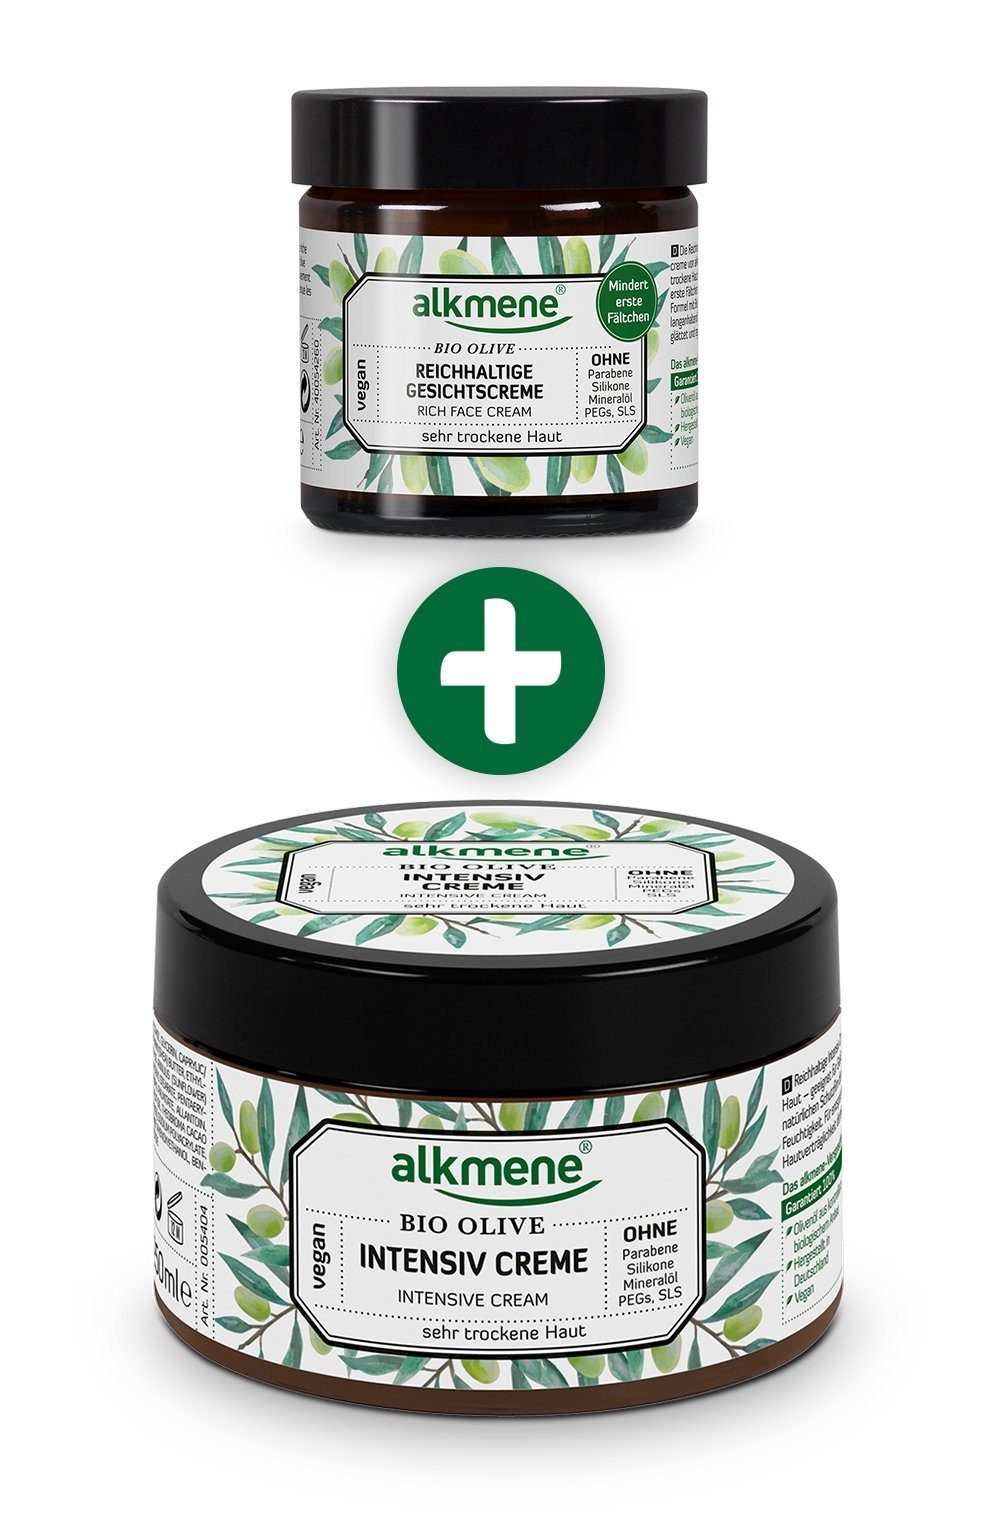 alkmene Hautpflege-Set Intensiv Creme & Gesichtscreme Bio Olive - Körpercreme & Gesichtscreme, 2-tlg.